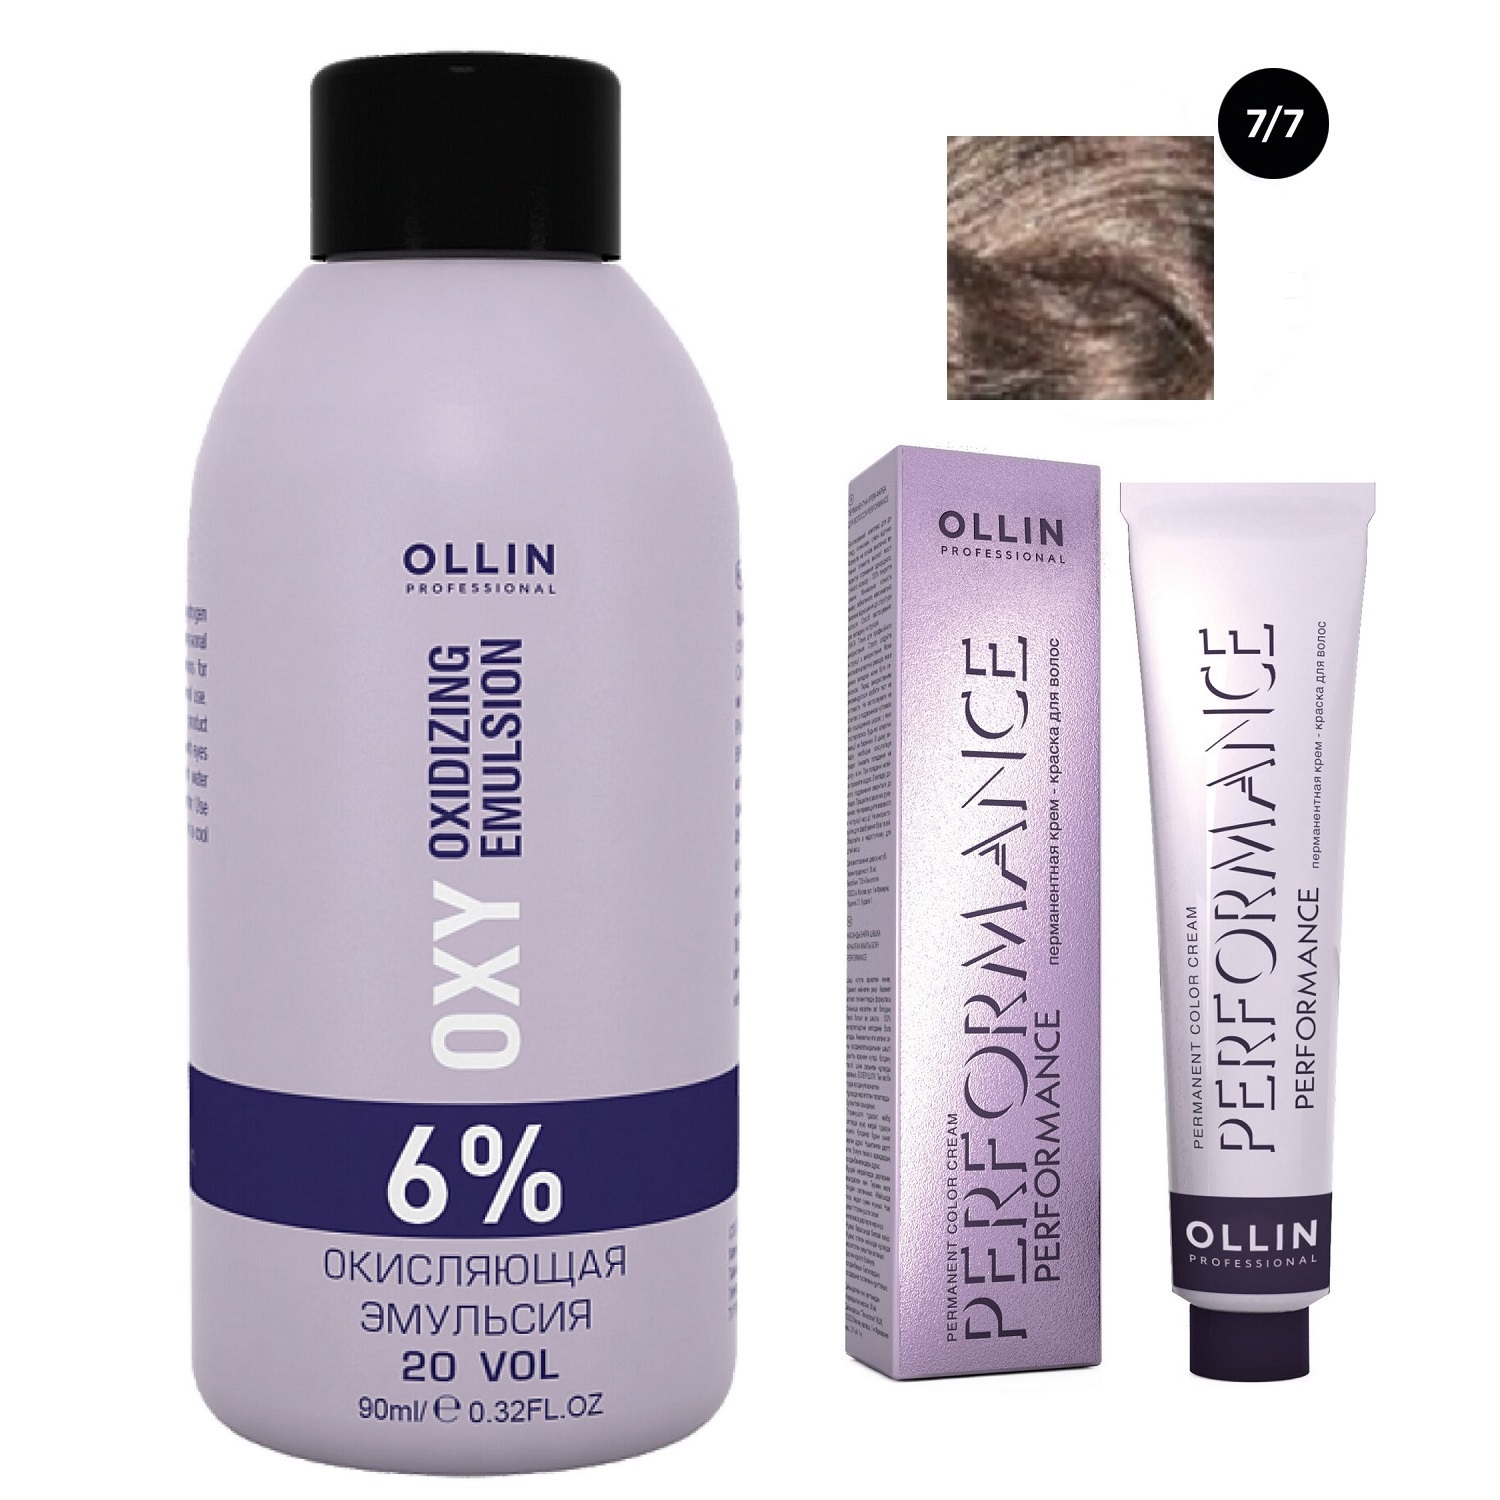 Ollin Professional Набор Перманентная крем-краска для волос Ollin Performance оттенок 7/7 русый коричневый 60 мл + Окисляющая эмульсия Oxy 6% 90 мл (Ollin Professional, Performance)